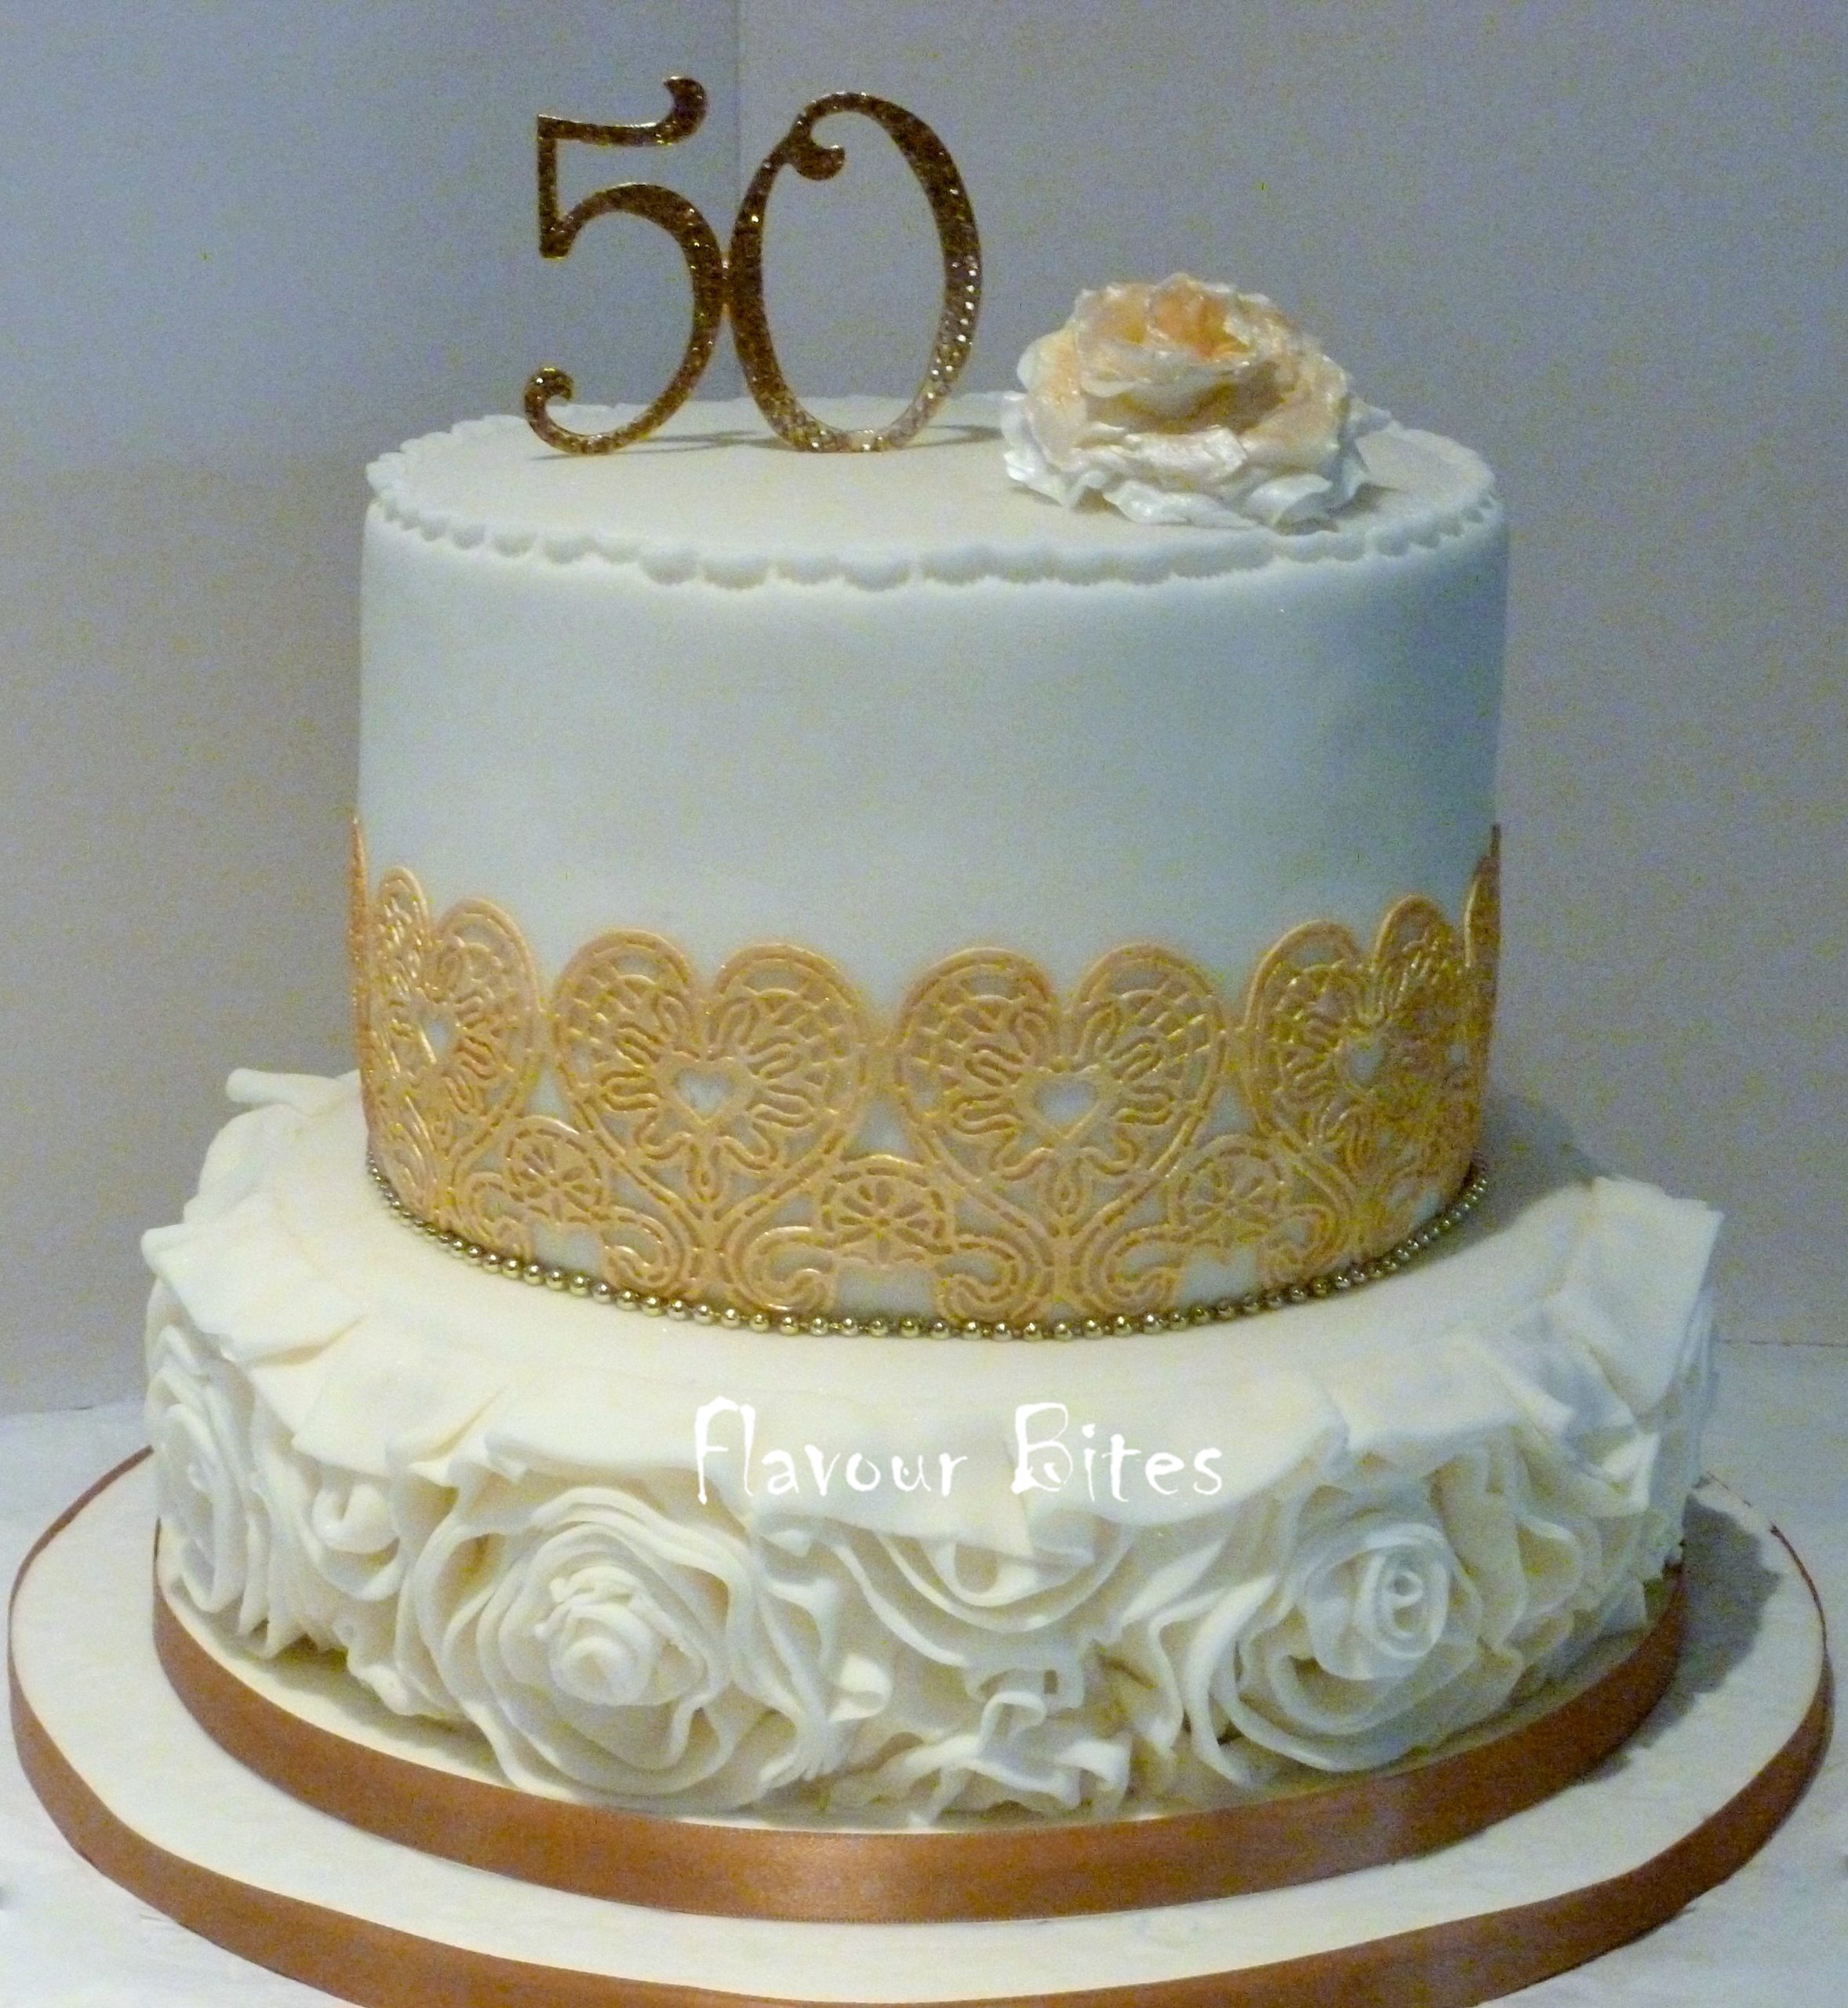 50th-birthday-cake-flavour-bites-cakes